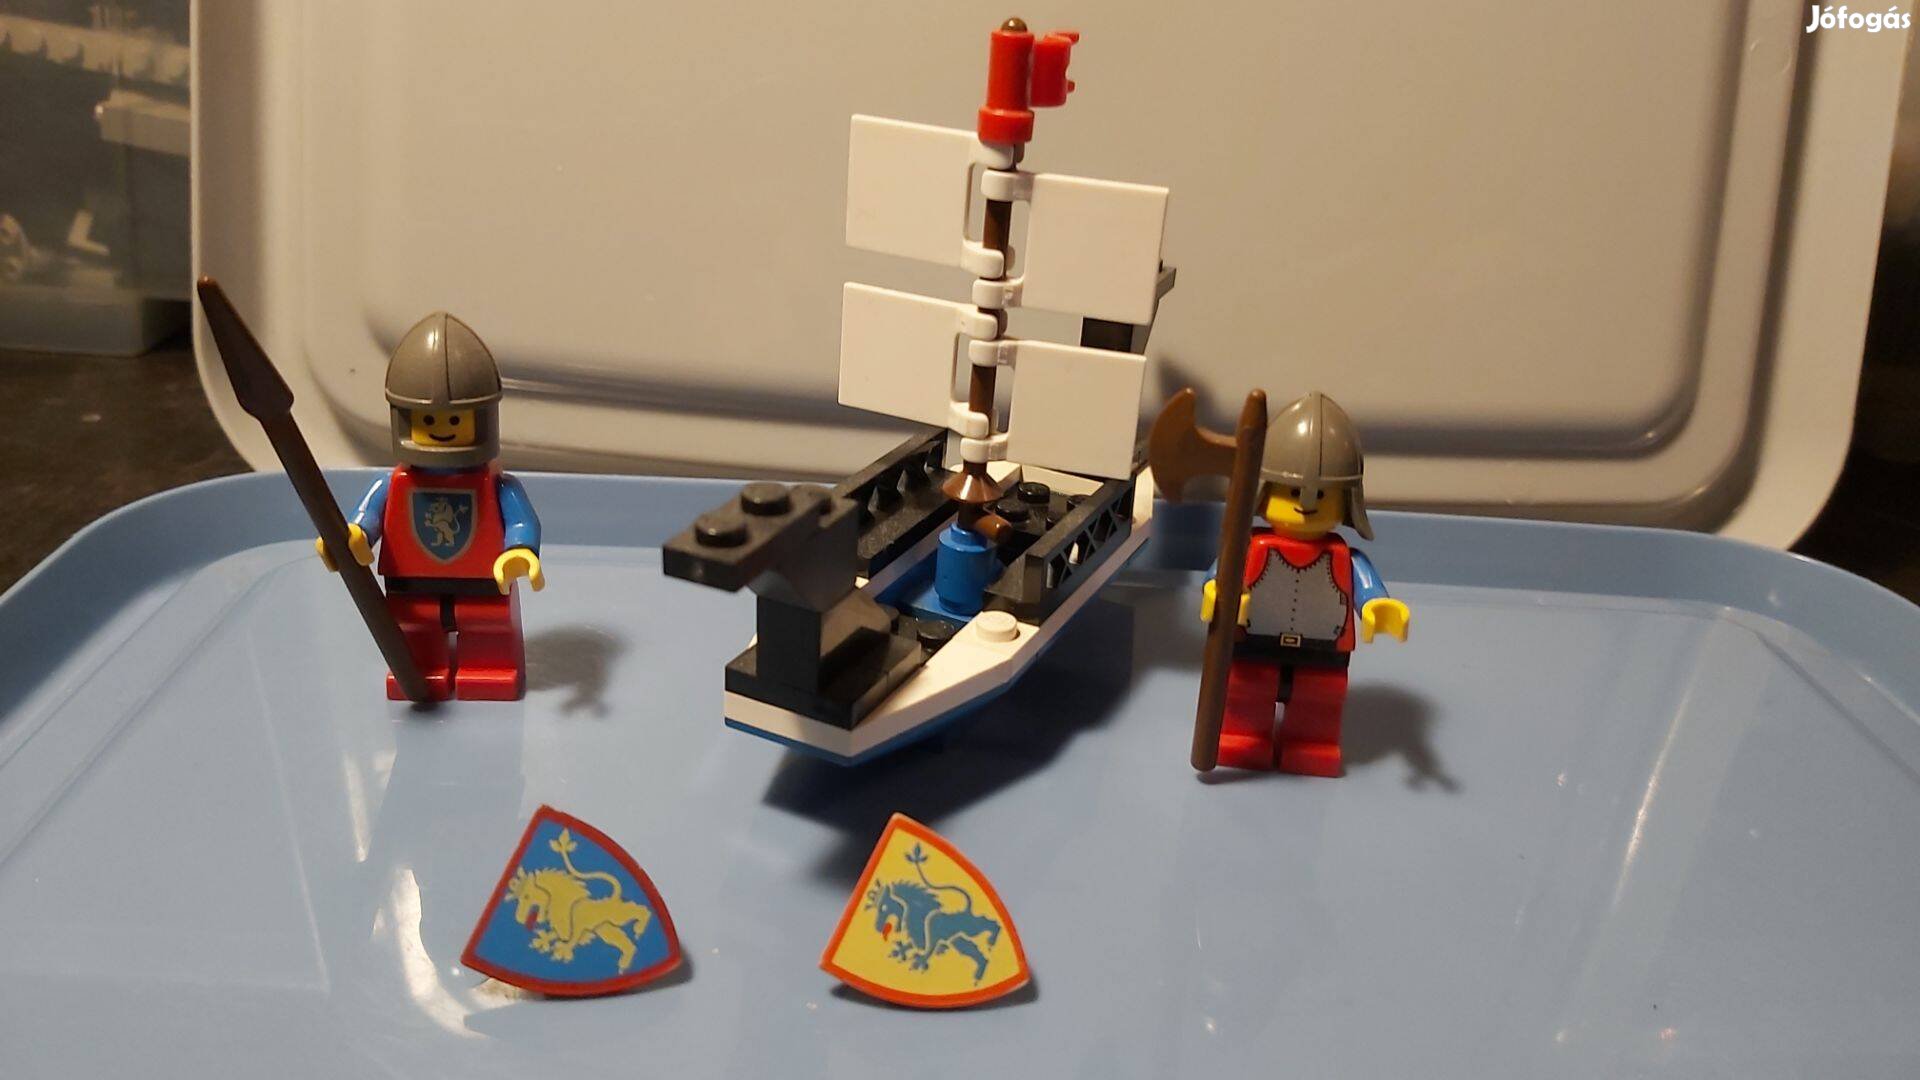 LEGO Castle 6017 kings oarsmen